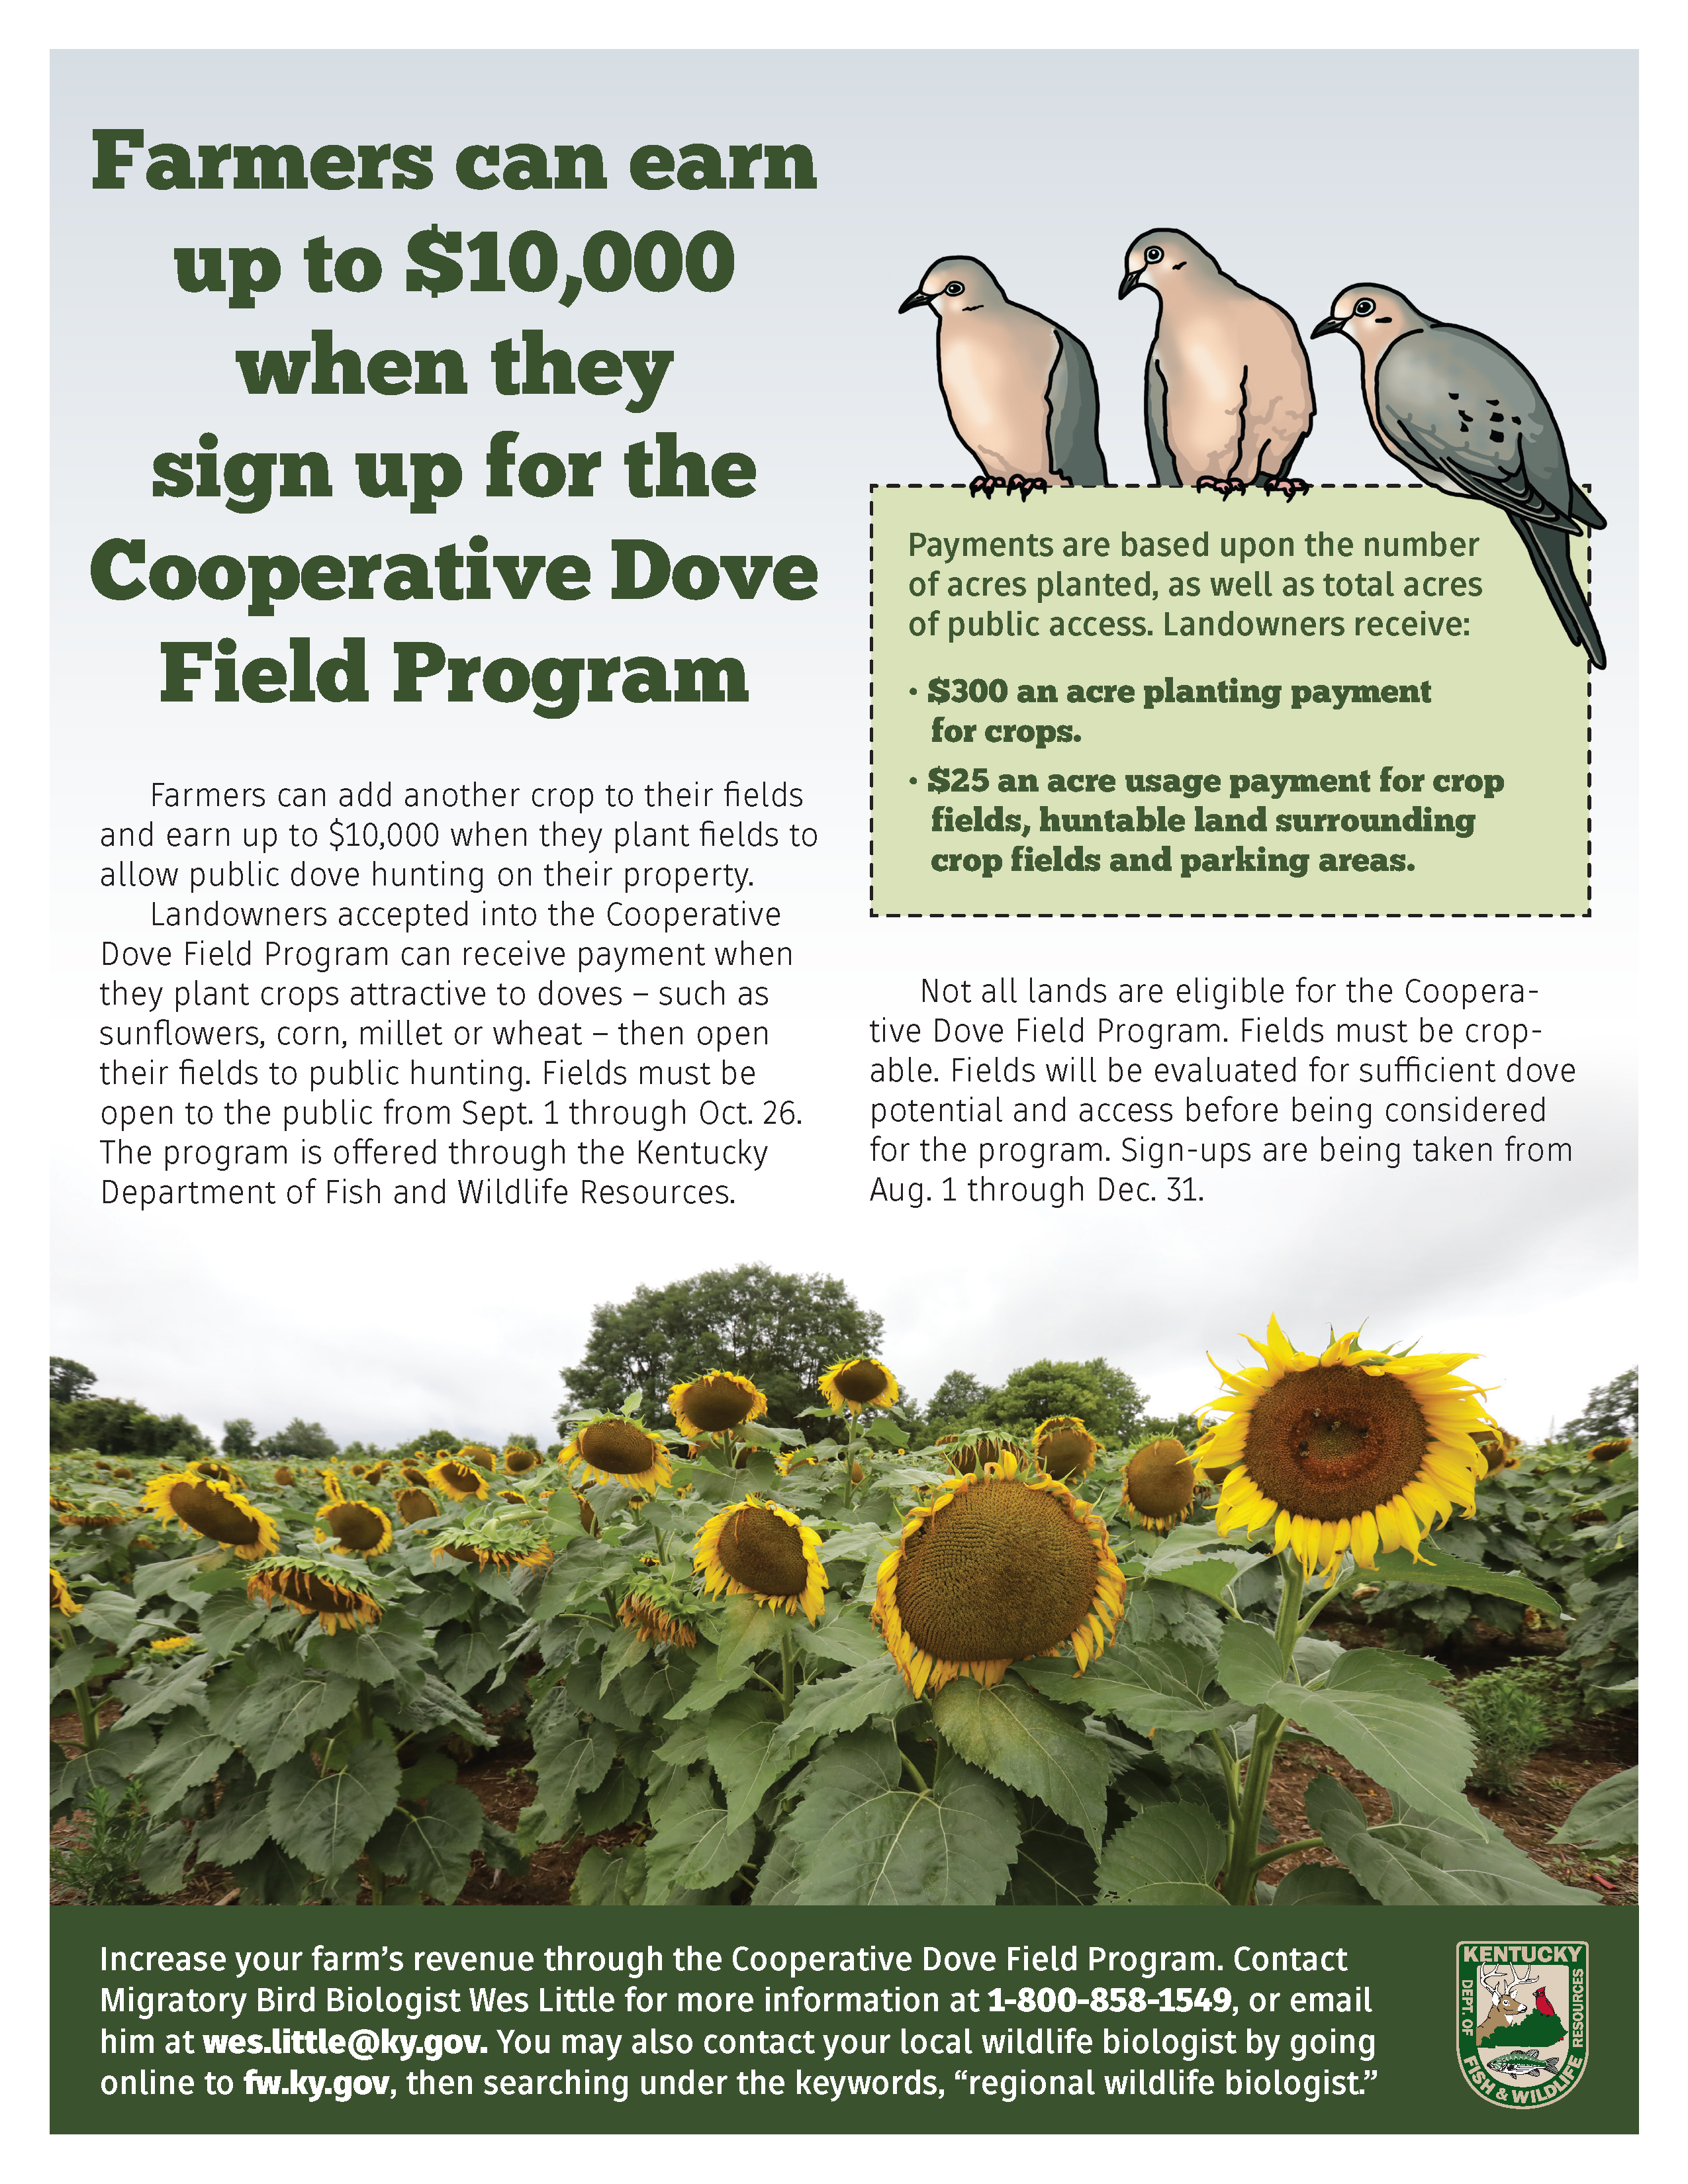 Cooperative Dove Field Program